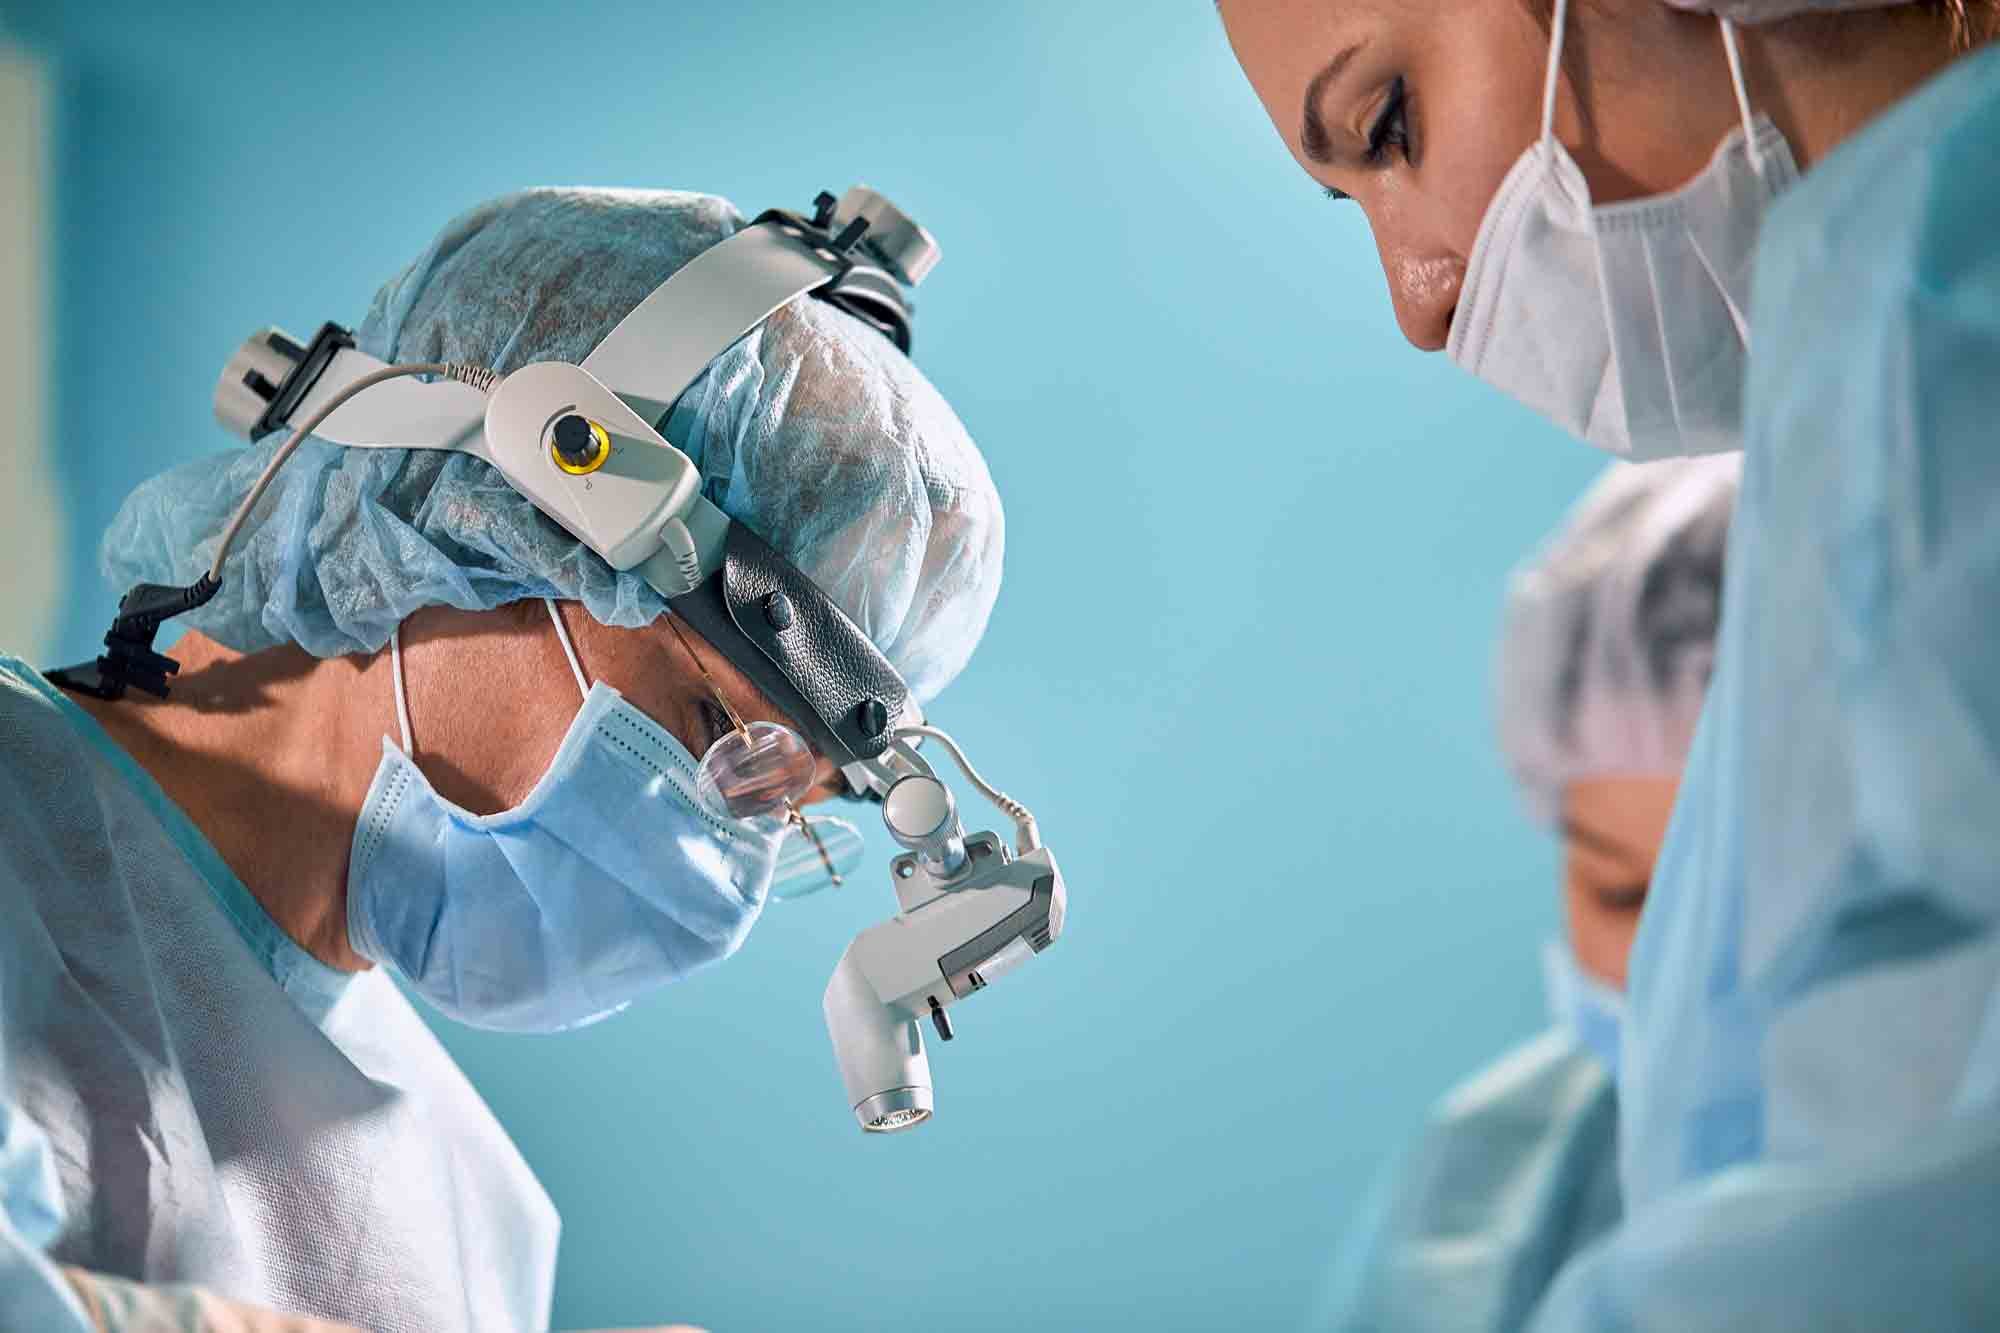 Le seul traitement de la hernie inguinale est une opération chirurgicale